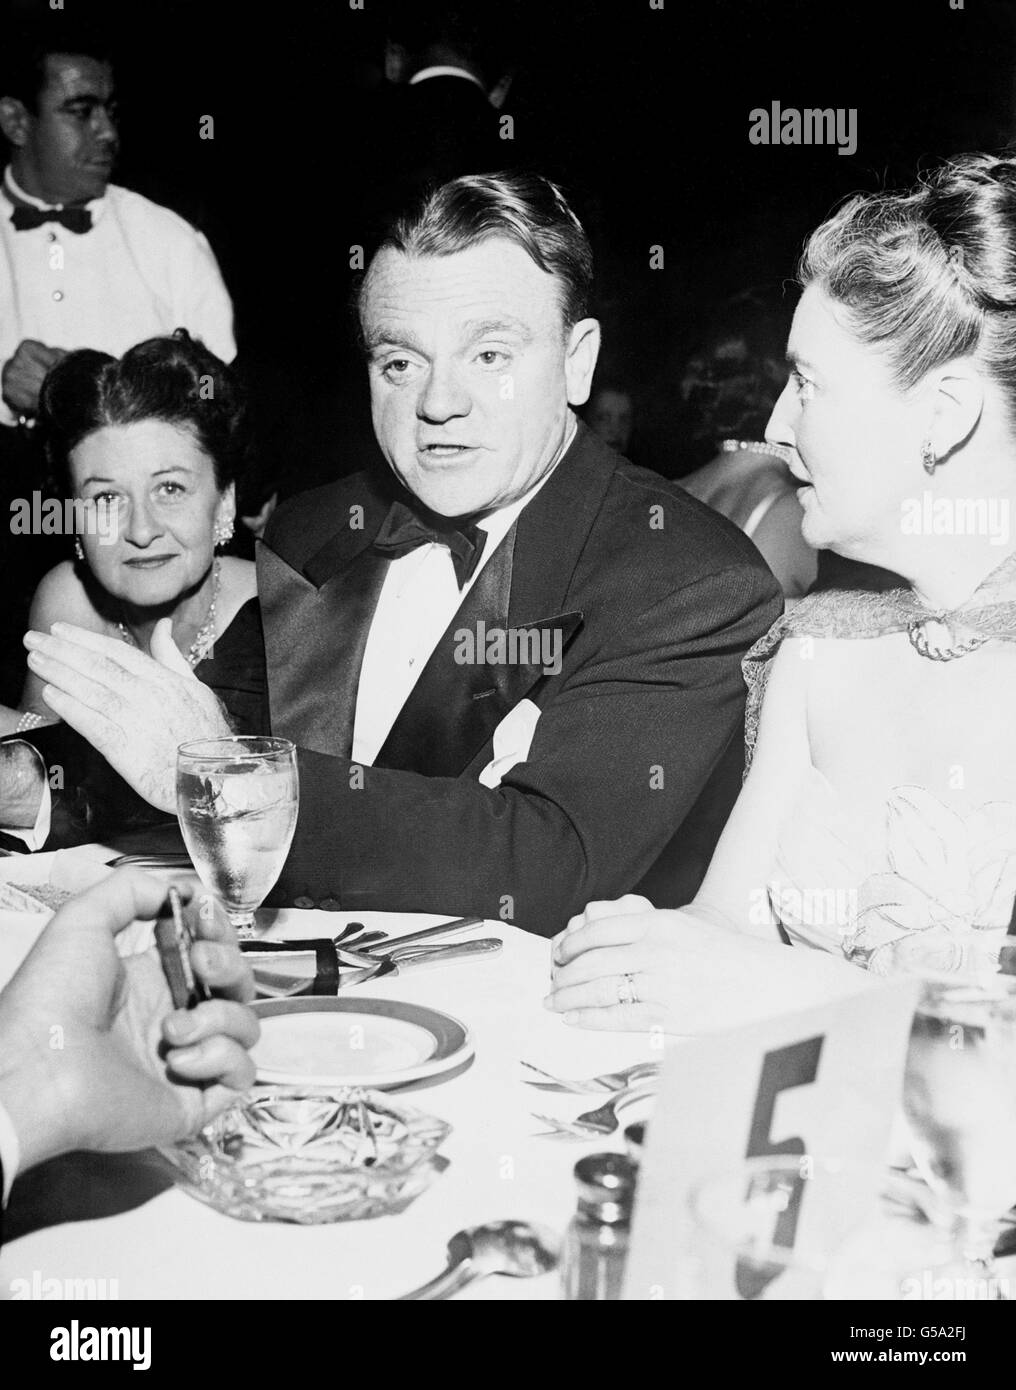 James Cagney, un ancien combattant du film américain lors d'une fête hollywoodienne. À gauche se trouve son épouse Frances Vernon, et à droite se trouve Eloise O'Brien, épouse de l'acteur de cinéma Pat O'Brien. Banque D'Images